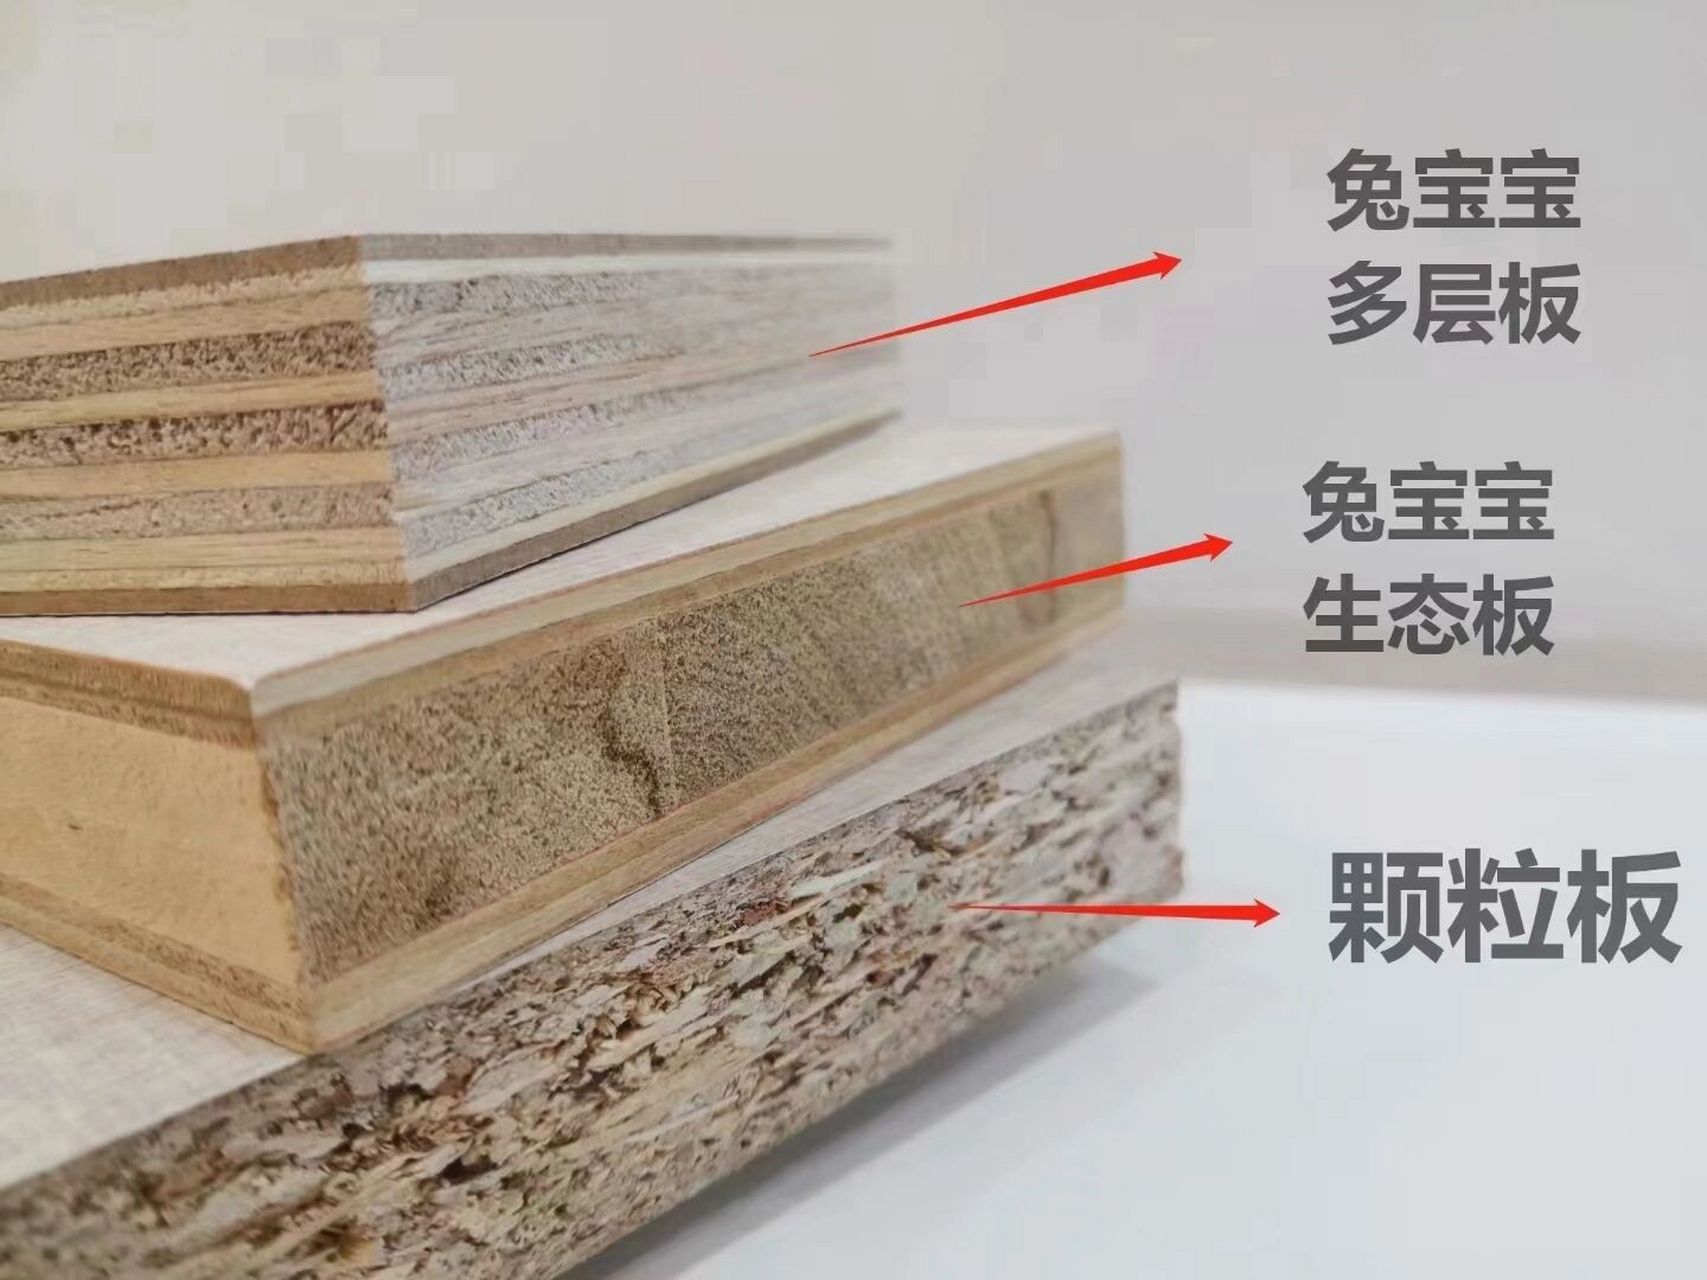 兔宝宝板材 生态板,颗粒板,多层板 兔宝宝生态板:以优质木材为原料